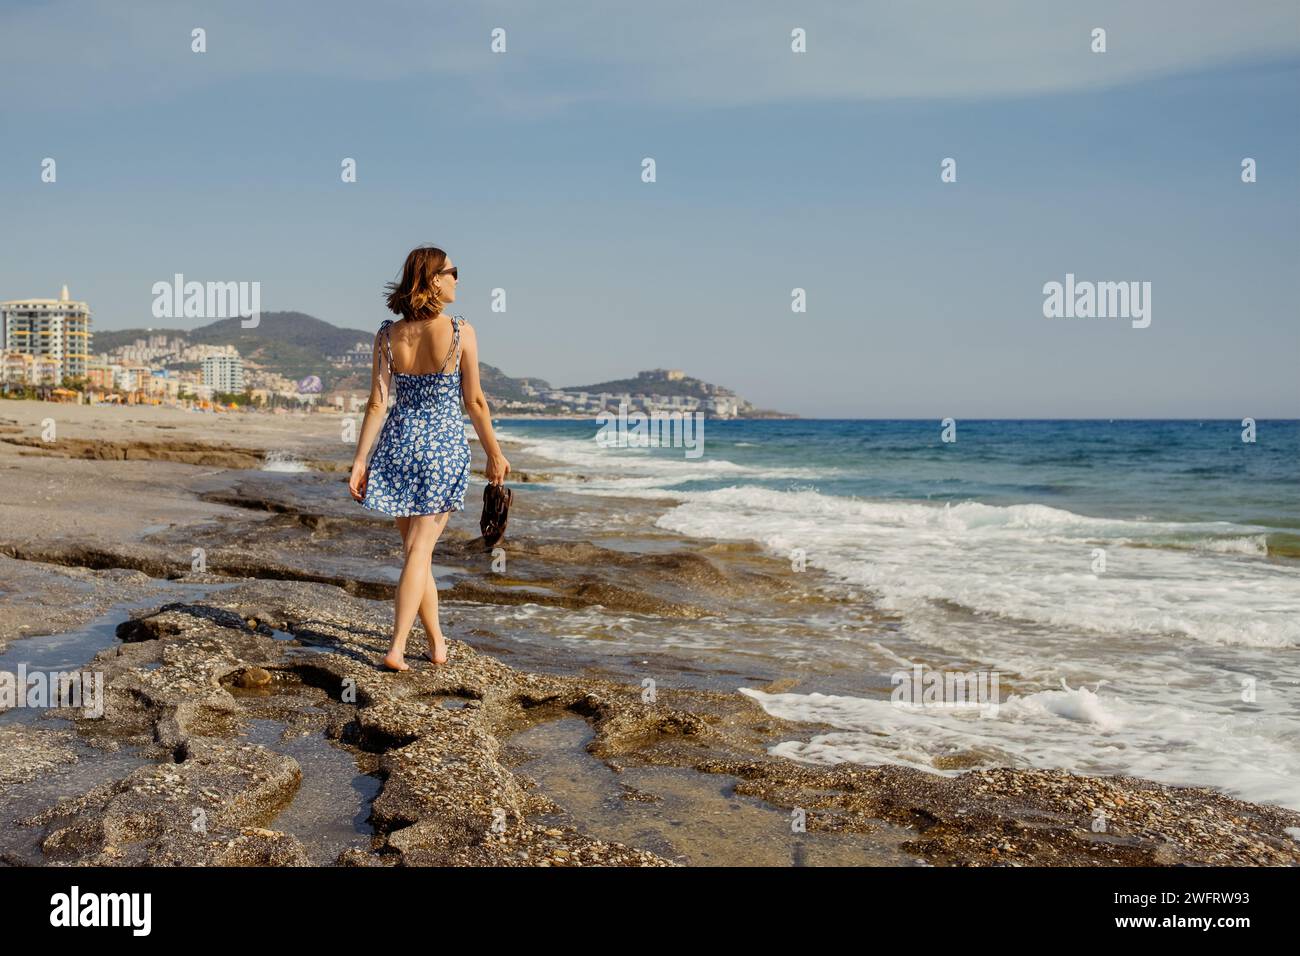 Eleganza marinara: Passeggia in riva al mare con un abito estivo Foto Stock